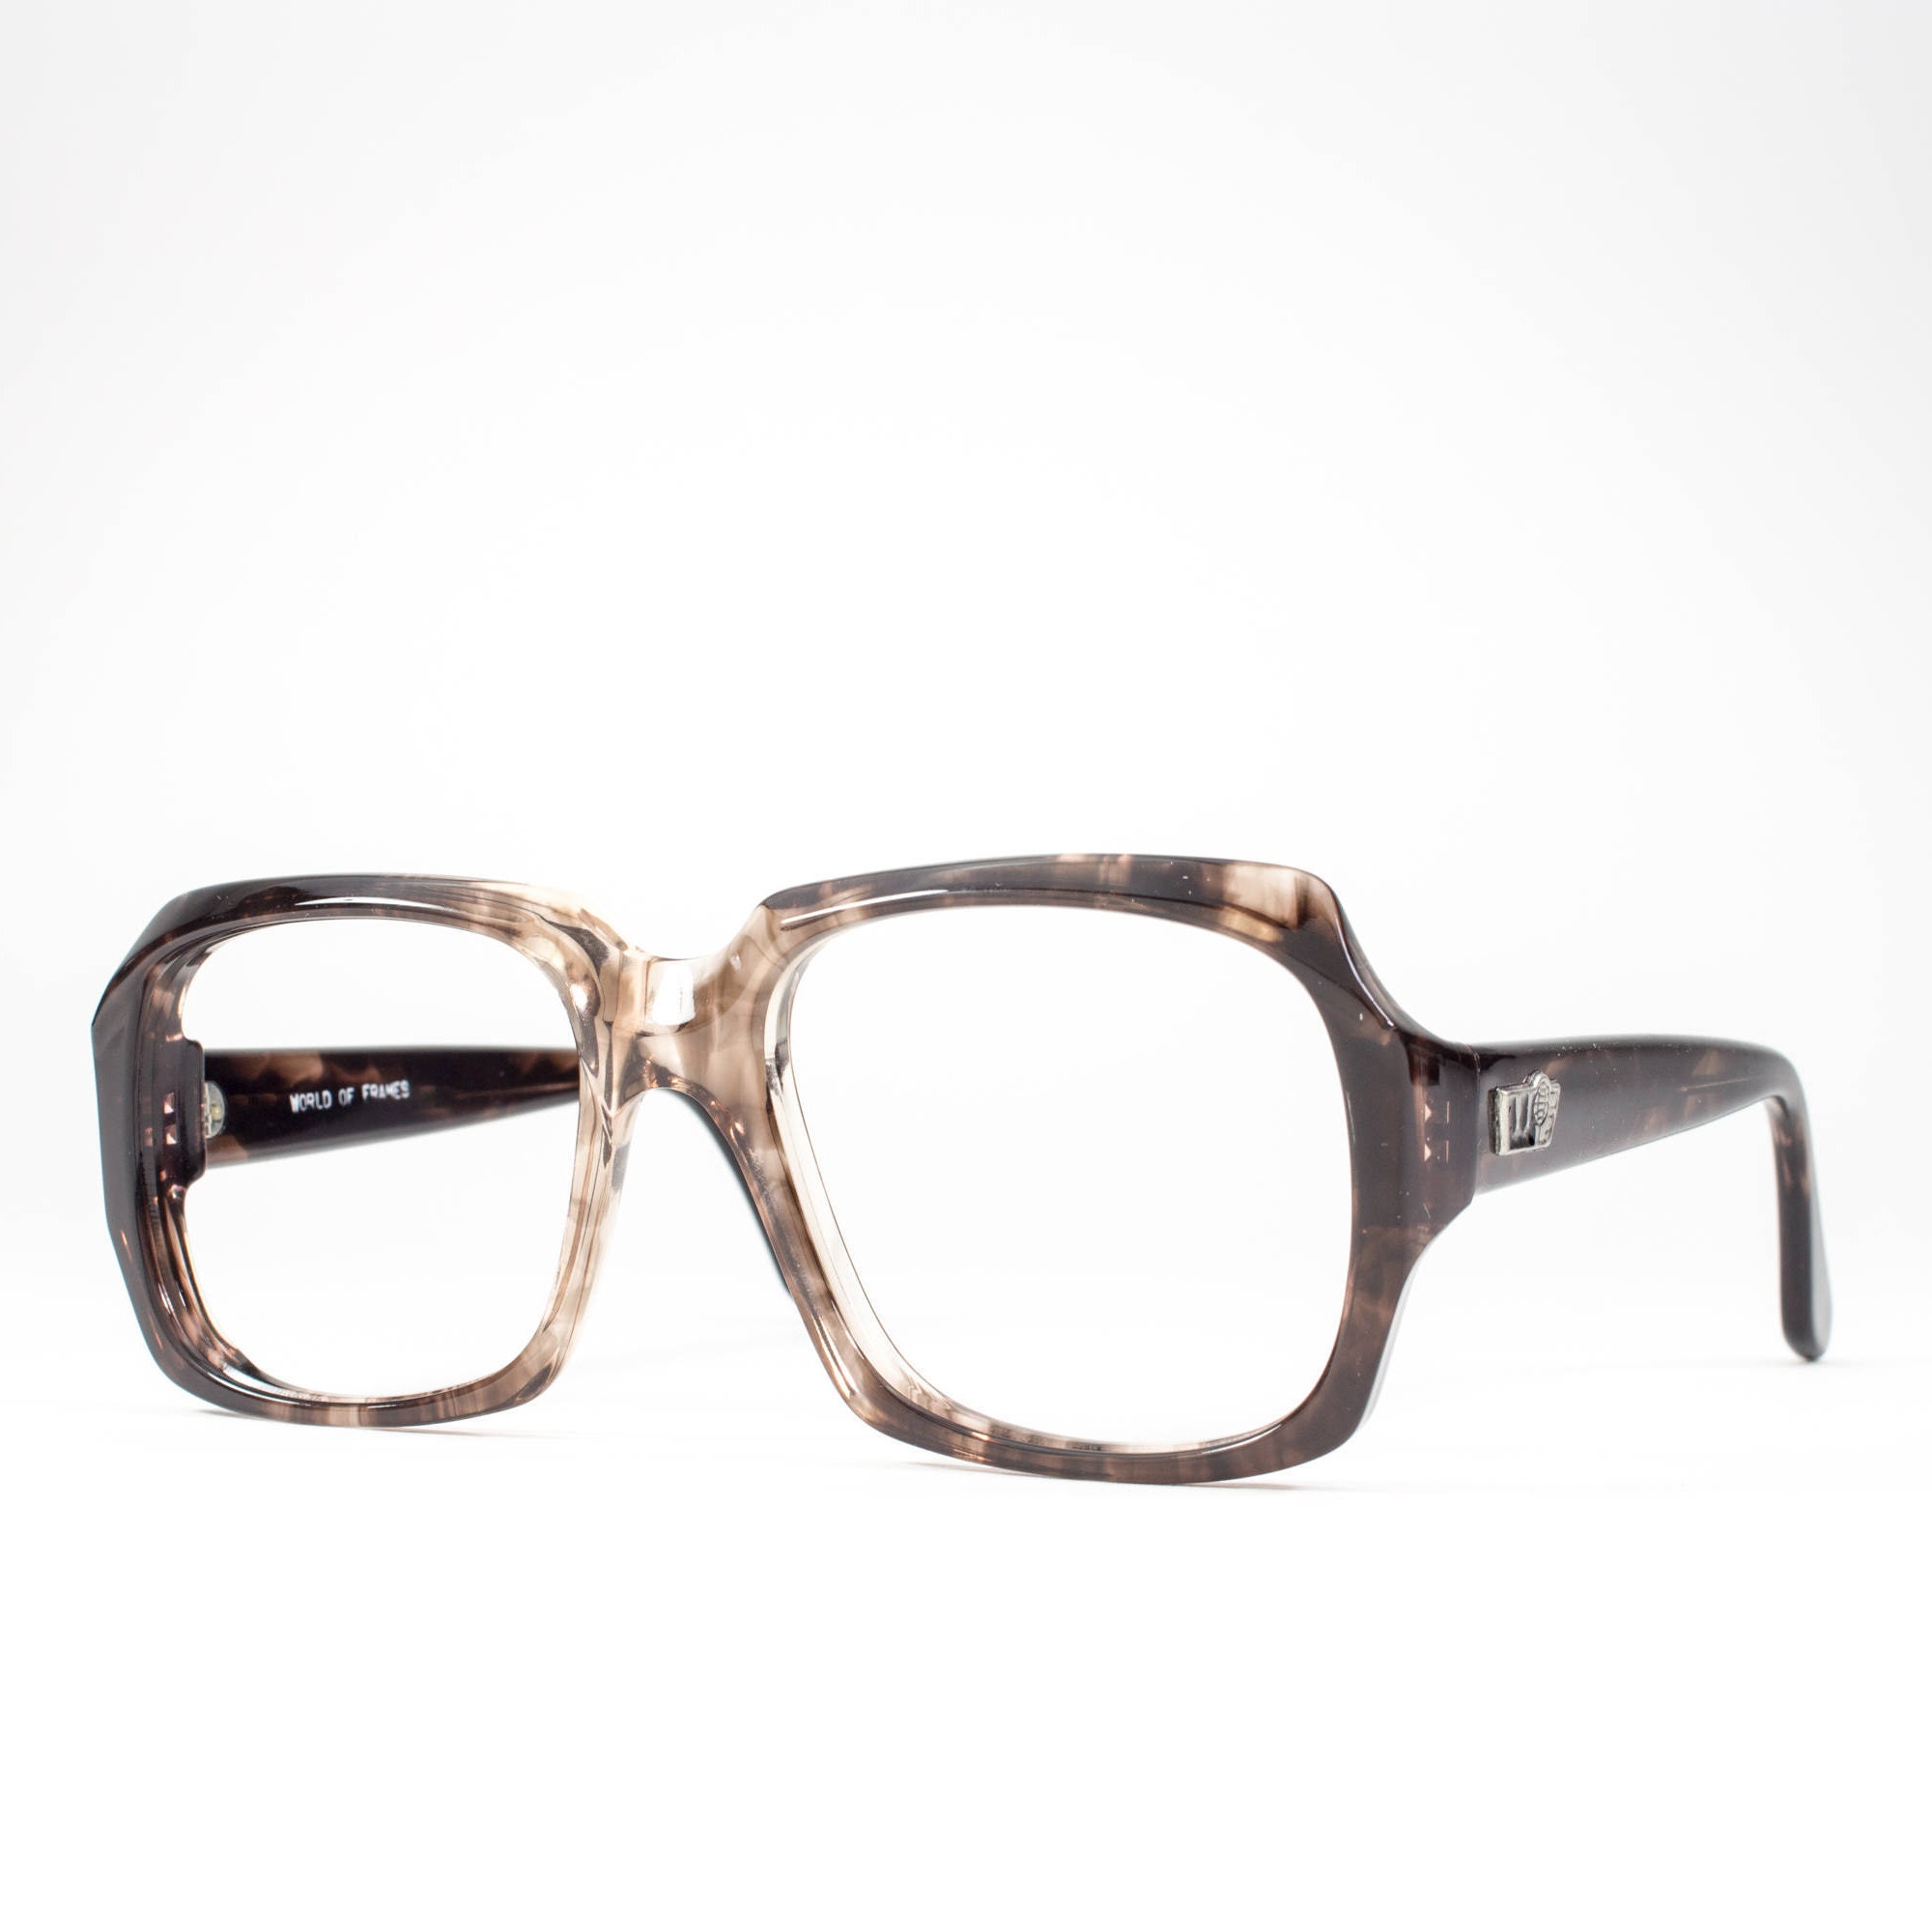 70s Eyeglasses 1970s Vintage Glasses Horn Rimmed Glasses Frames